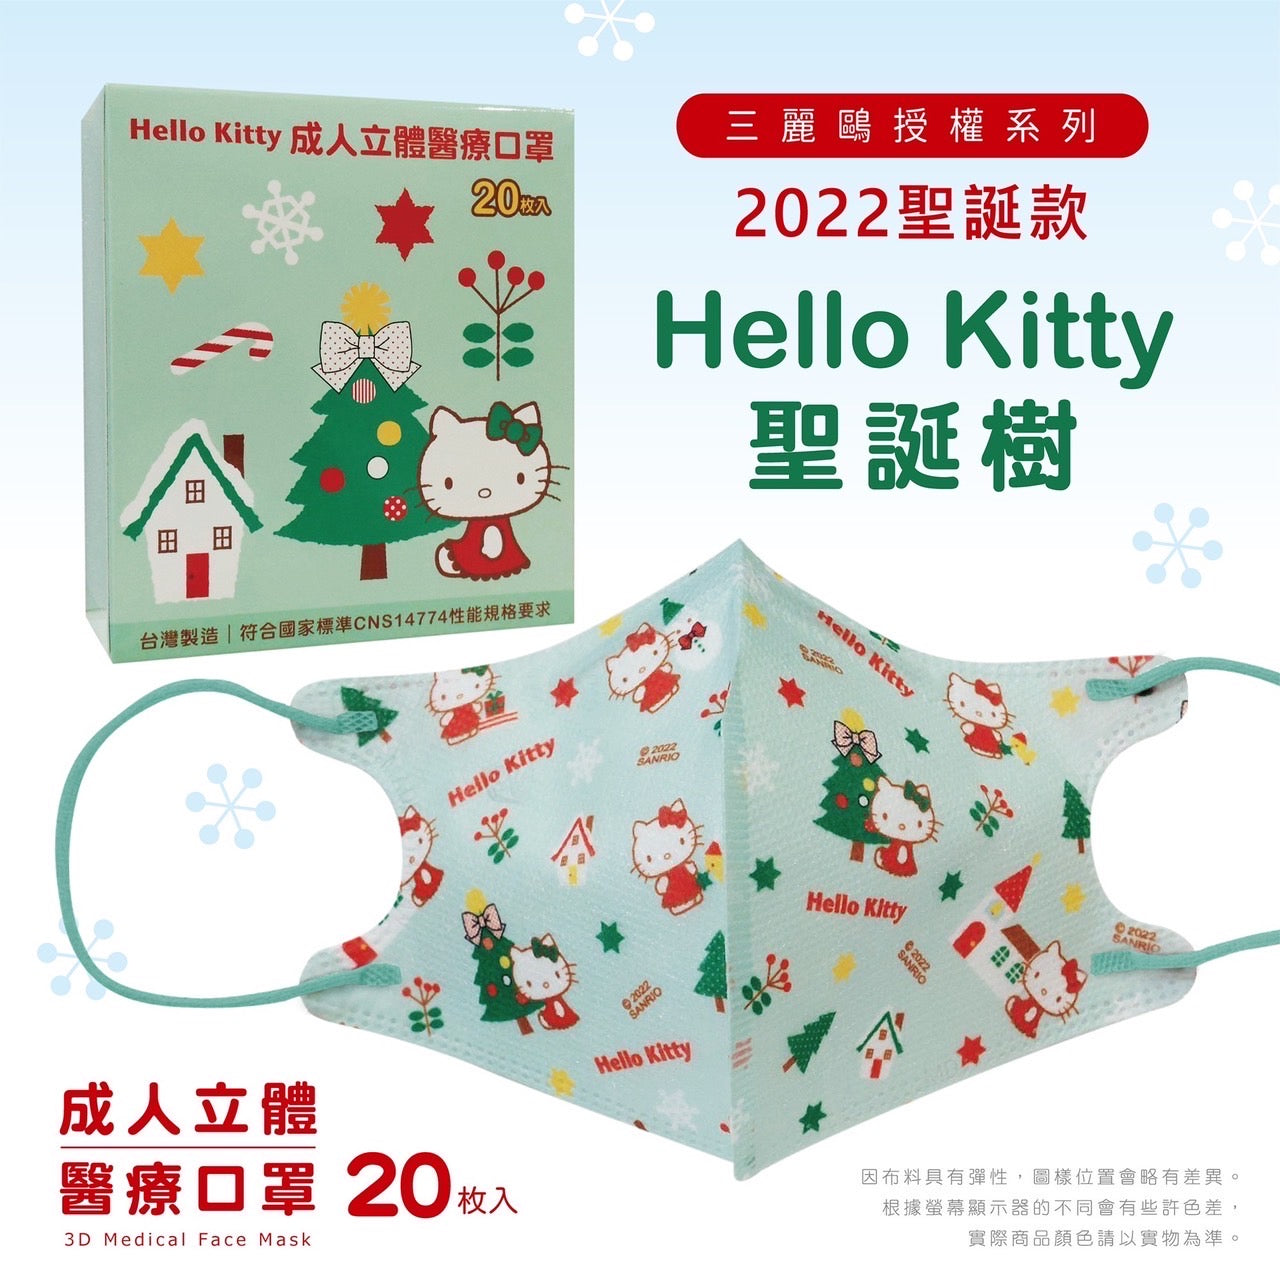 【現貨】Hello Kitty Christmas Tree 20pcs Made in Taiwan